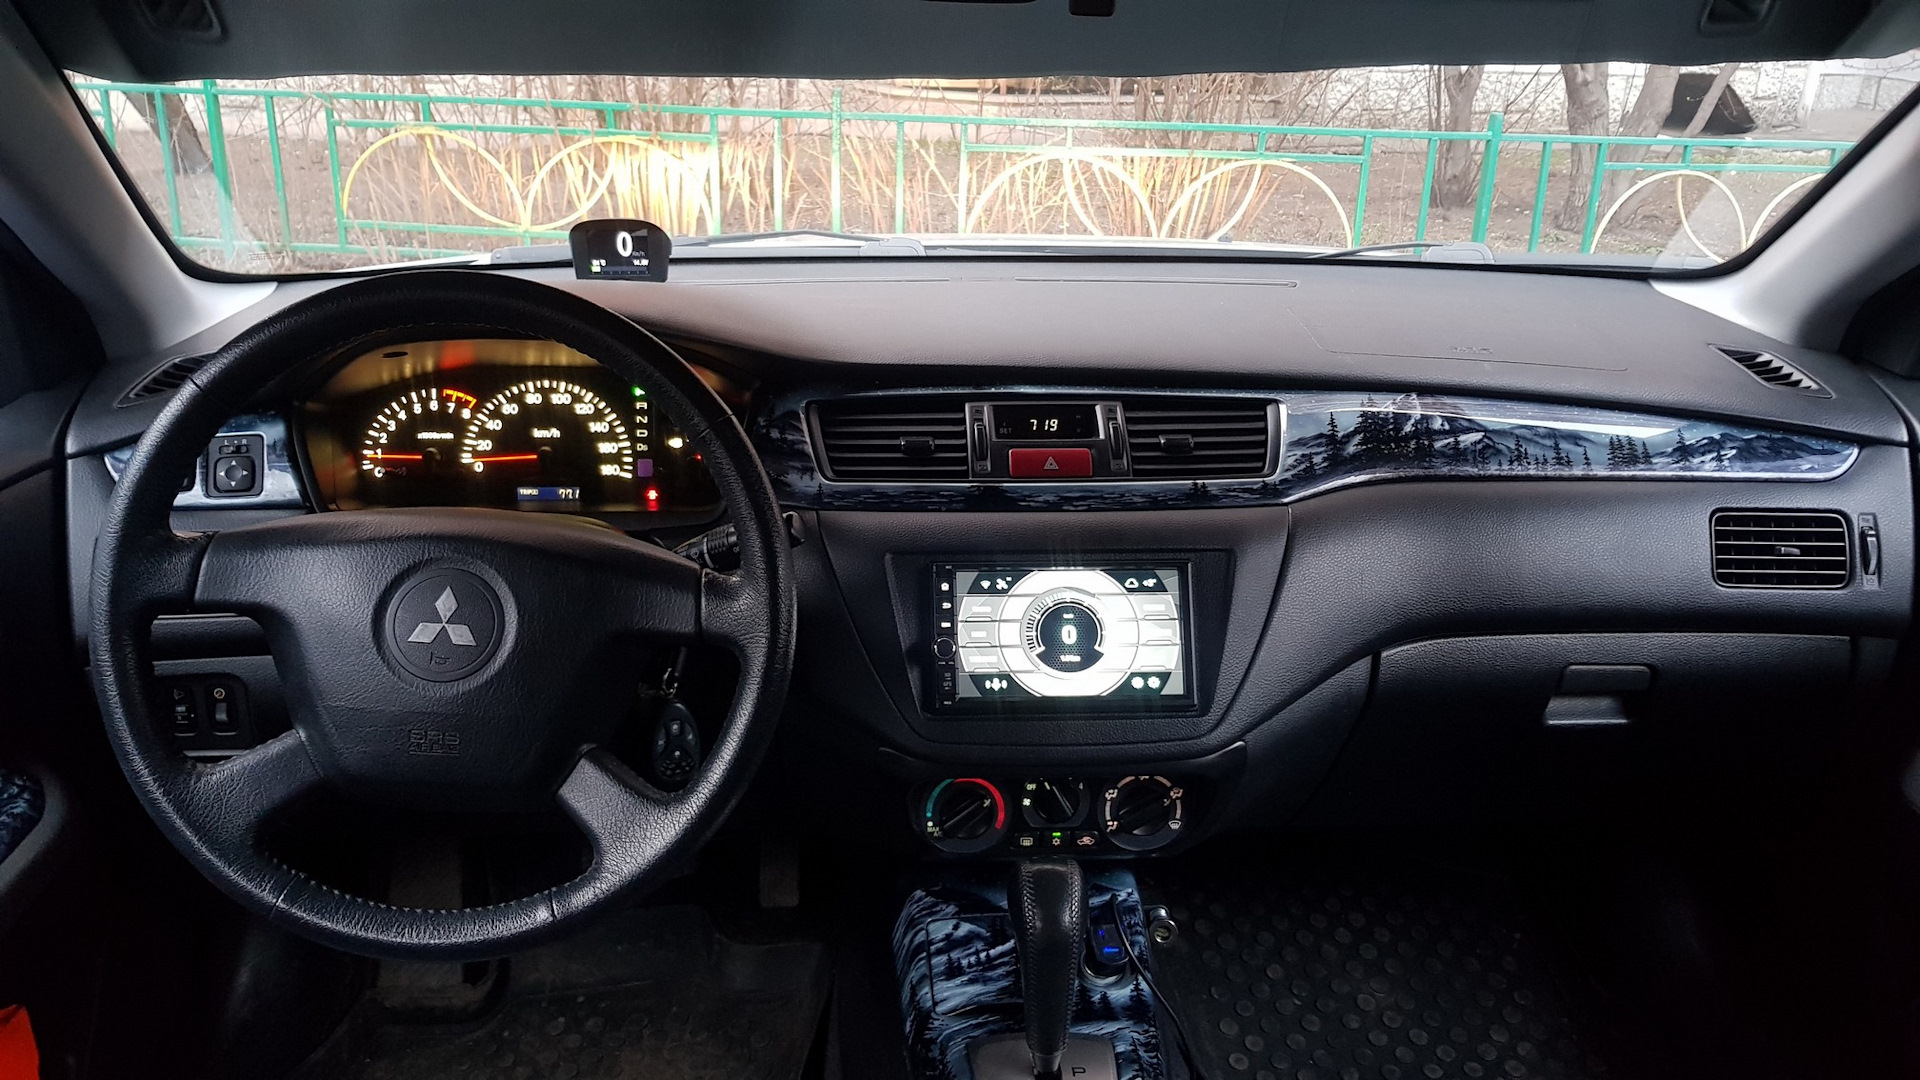 Купить Коврики в салон Mitsubishi Lancer 9 в Украине | Интернет-магазин Sport-Car